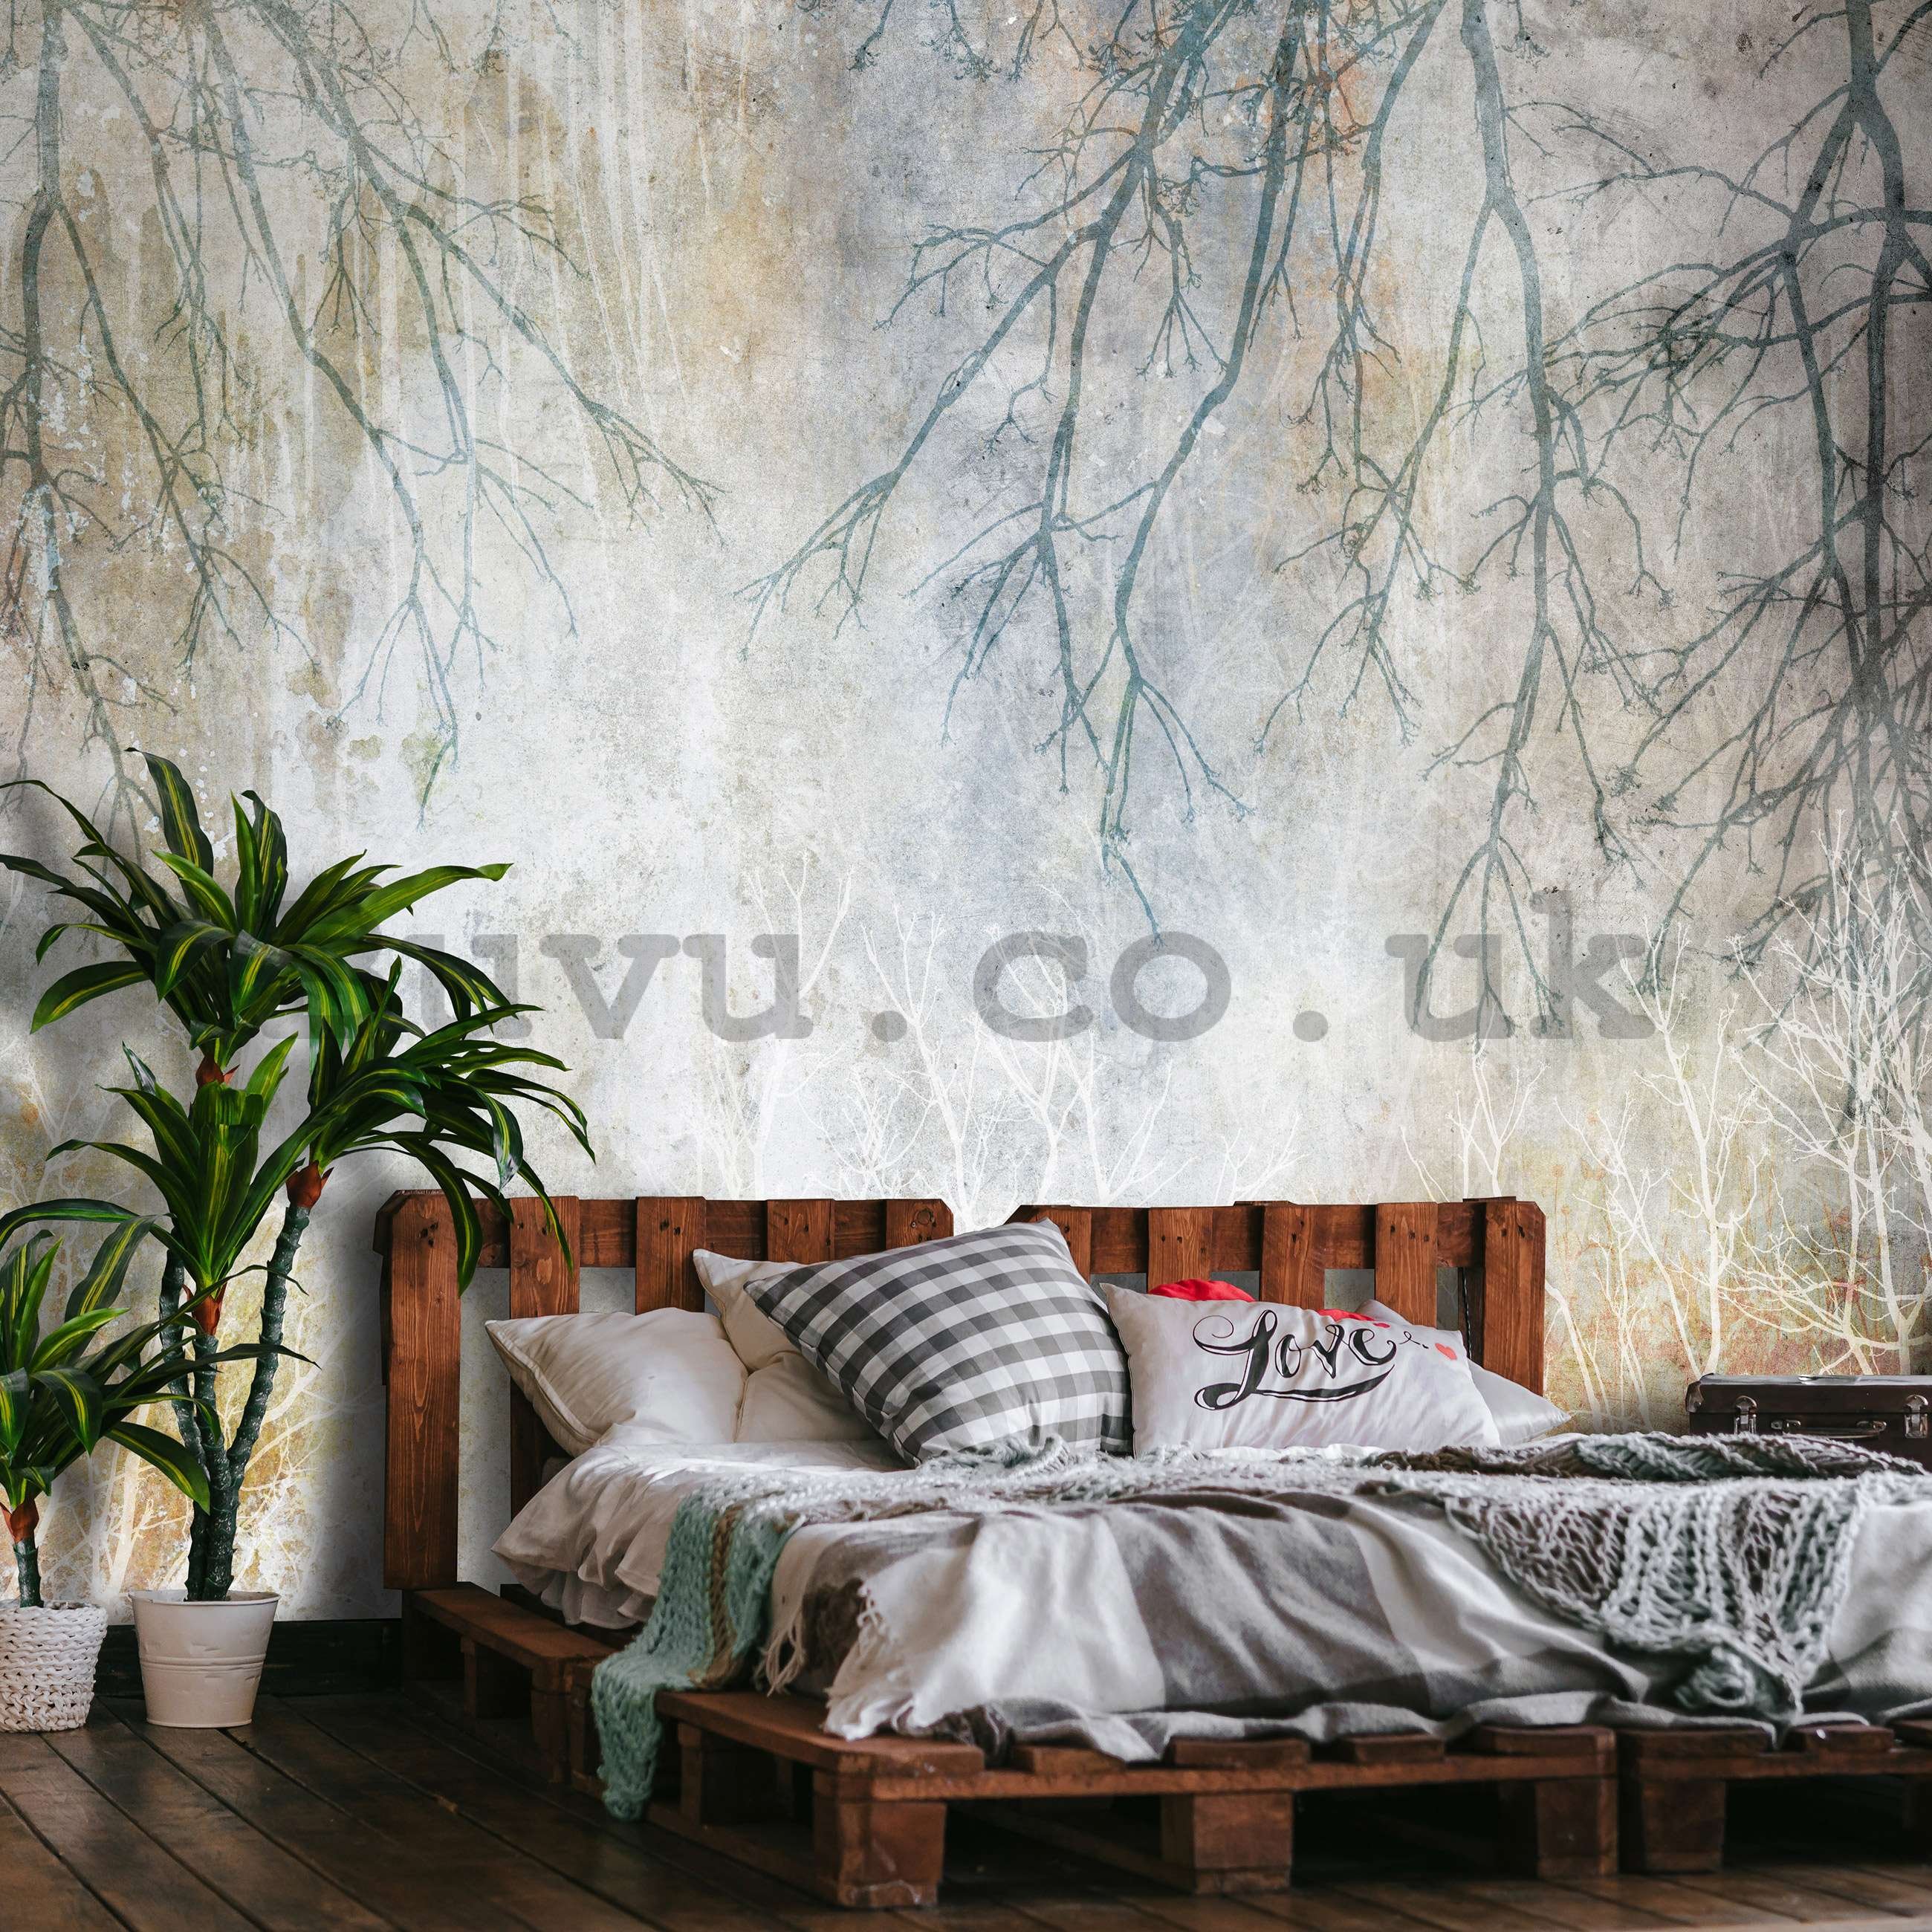 Wall mural vlies: Autumn branches - 254x184 cm